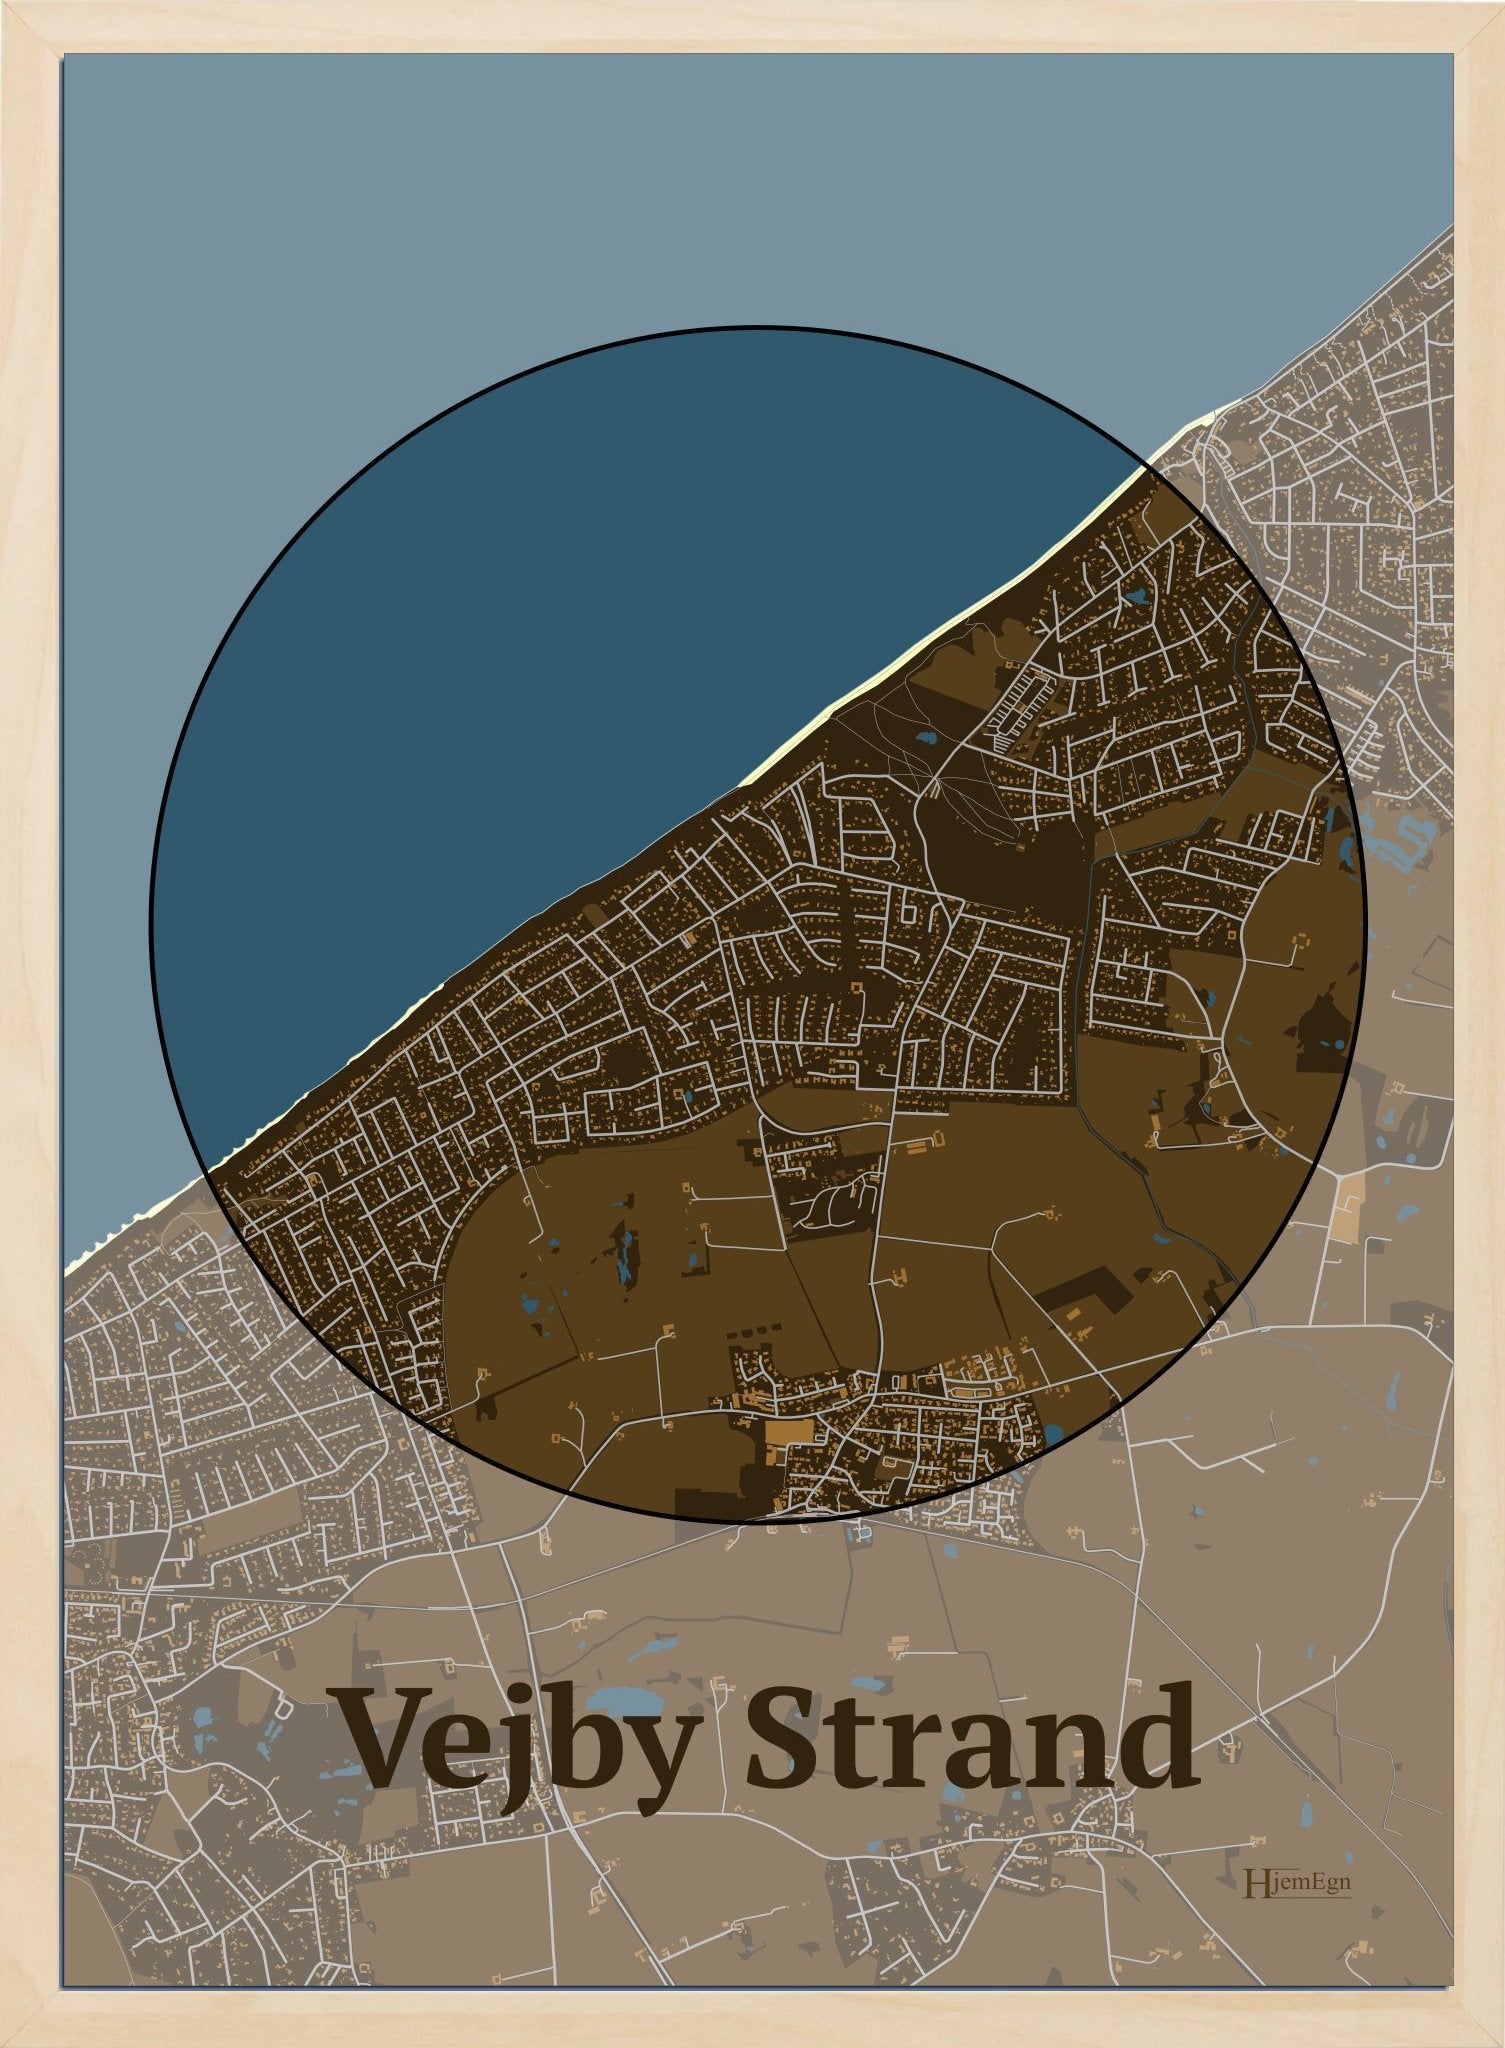 Vejby Strand plakat i farve mørk brun og HjemEgn.dk design centrum. Design bykort for Vejby Strand